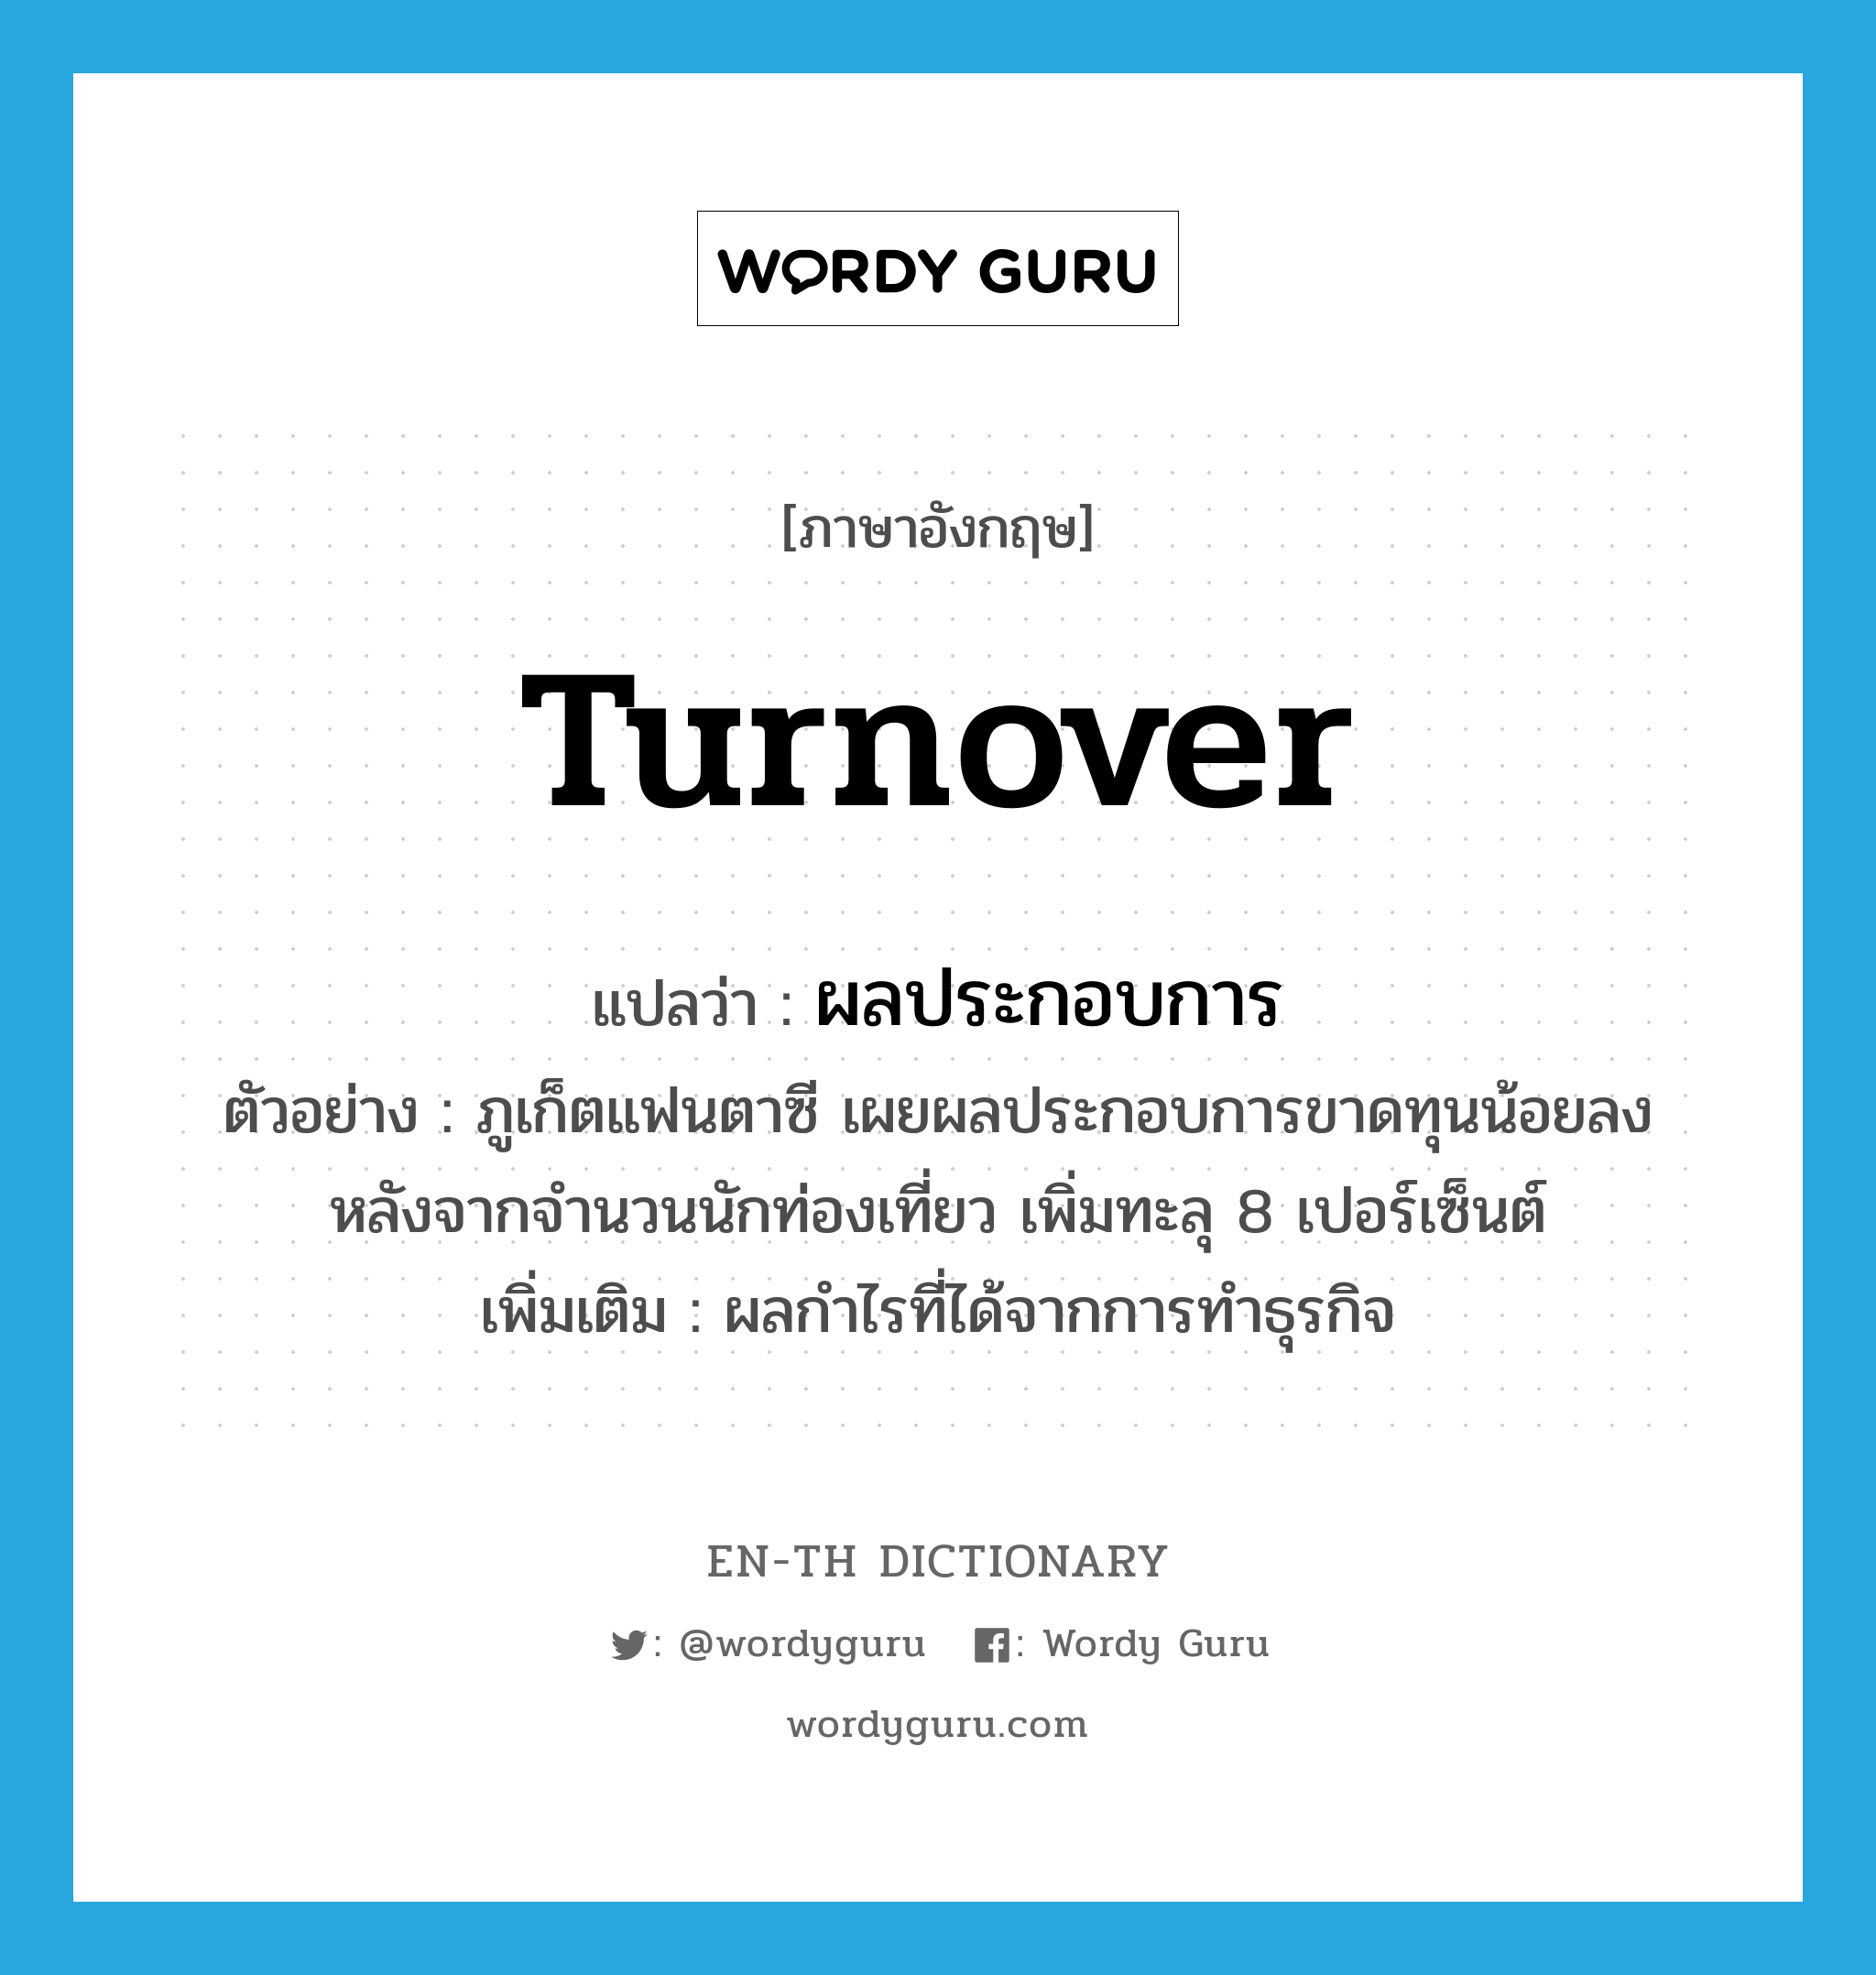 turnover แปลว่า?, คำศัพท์ภาษาอังกฤษ turnover แปลว่า ผลประกอบการ ประเภท N ตัวอย่าง ภูเก็ตแฟนตาซี เผยผลประกอบการขาดทุนน้อยลง หลังจากจำนวนนักท่องเที่ยว เพิ่มทะลุ 8 เปอร์เซ็นต์ เพิ่มเติม ผลกำไรที่ได้จากการทำธุรกิจ หมวด N